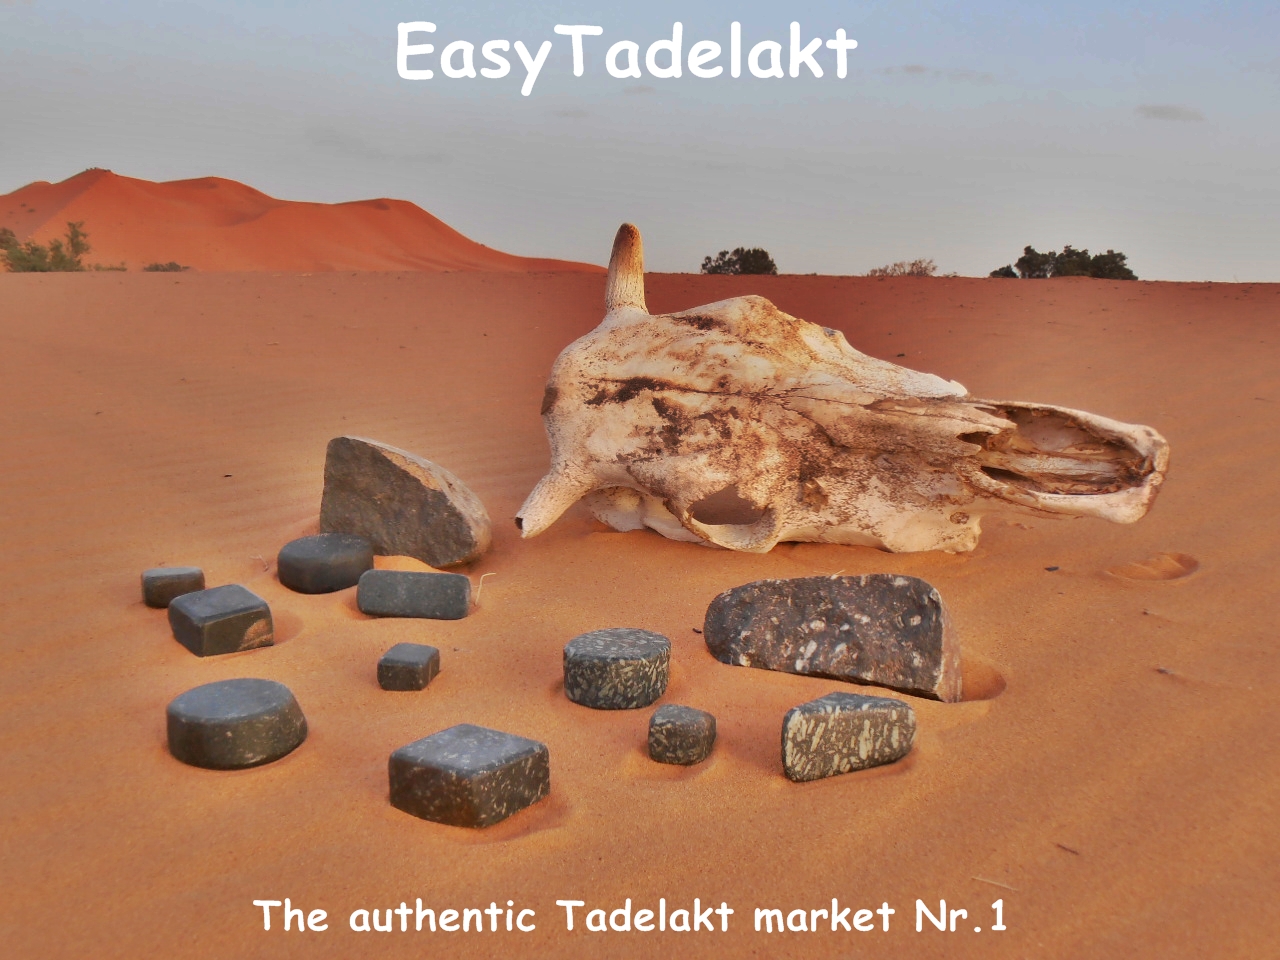 Authentic tadelakt stones made in Morocco from EasyTadelakt, the first and biggest online tadelakt market